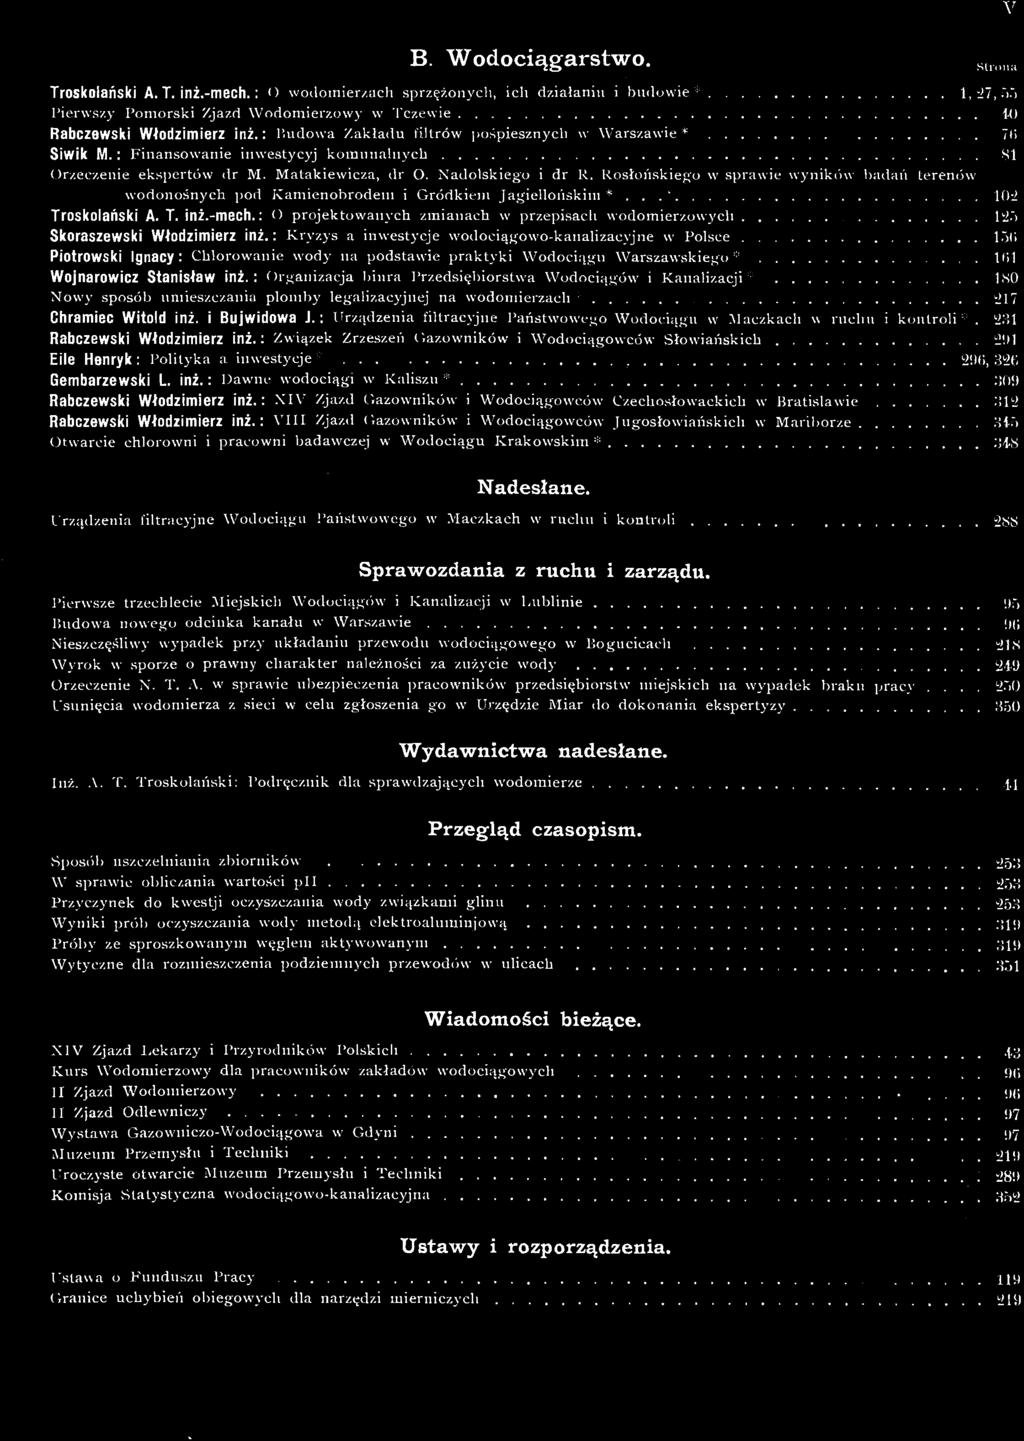 : VIII Zjazd Gazowników i Wodociągowców Jugosłowiańskich w Mariborze 345 Otwarcie chlorowni i pracowni badawczej w Wodociągu Krakowskim * 348 Nadesłane.